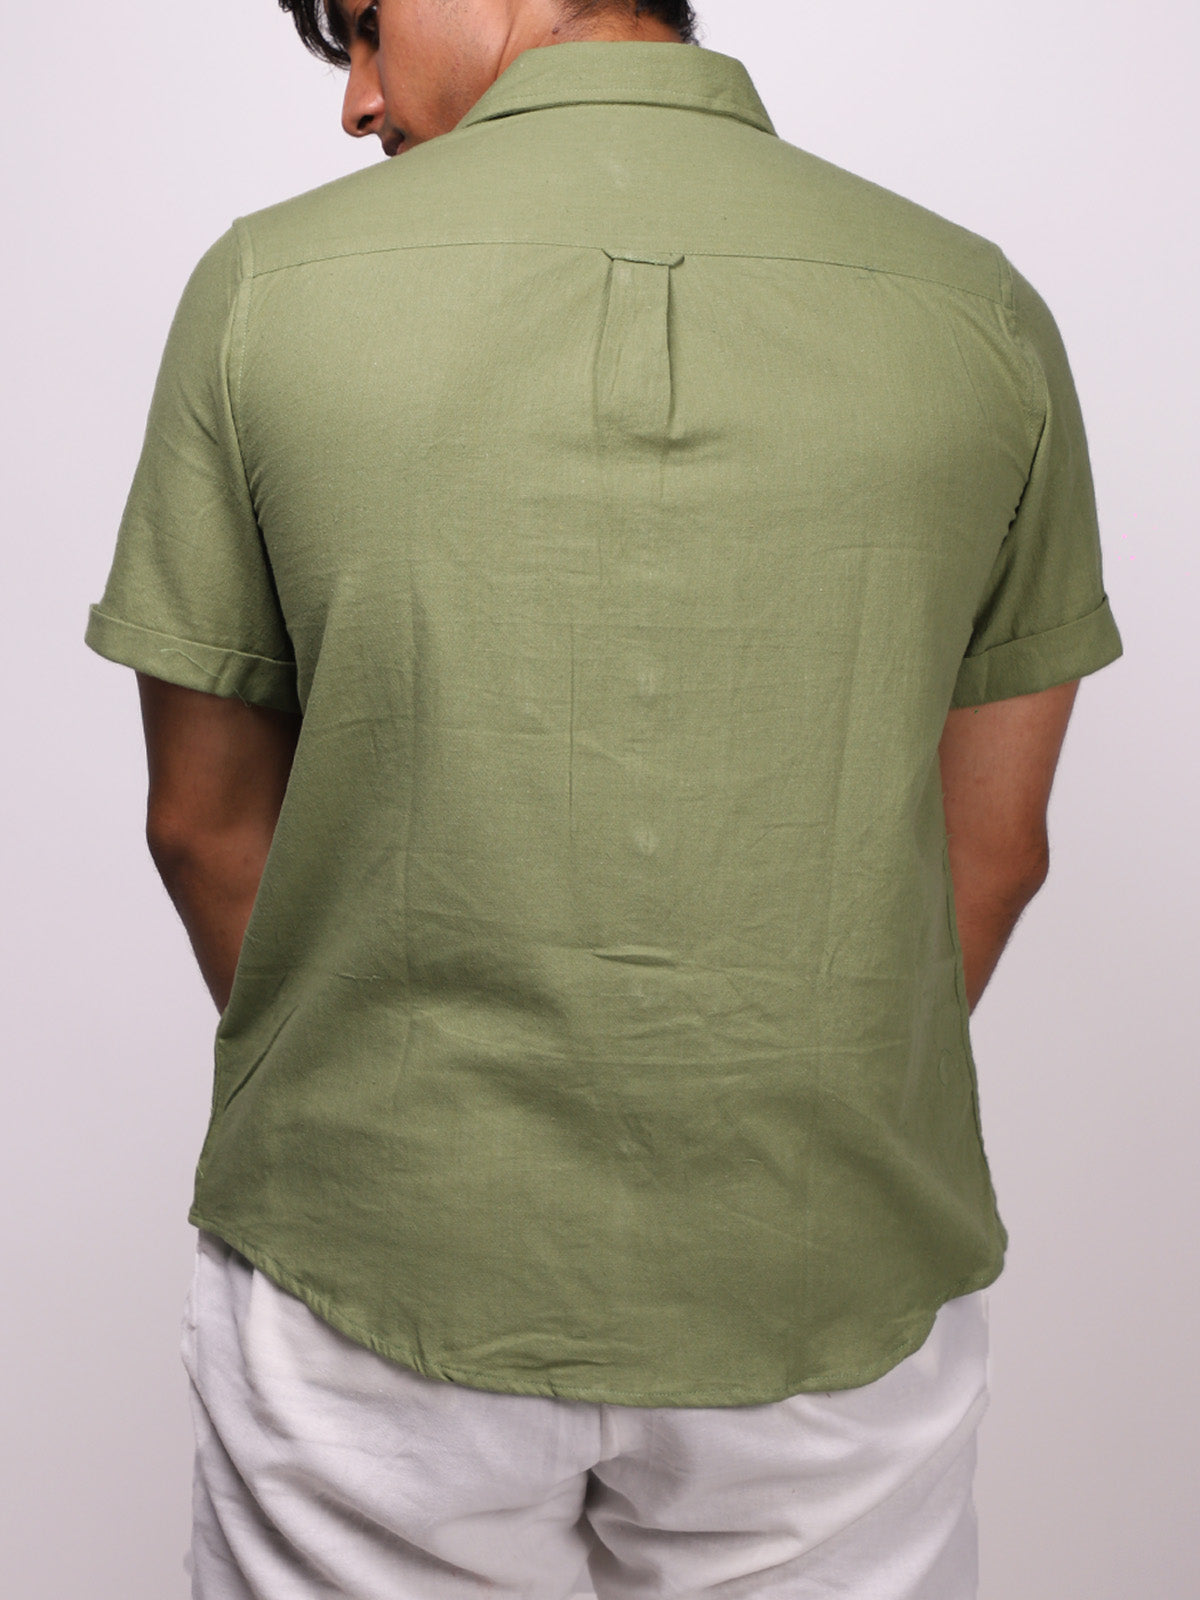 Resort Green shirt